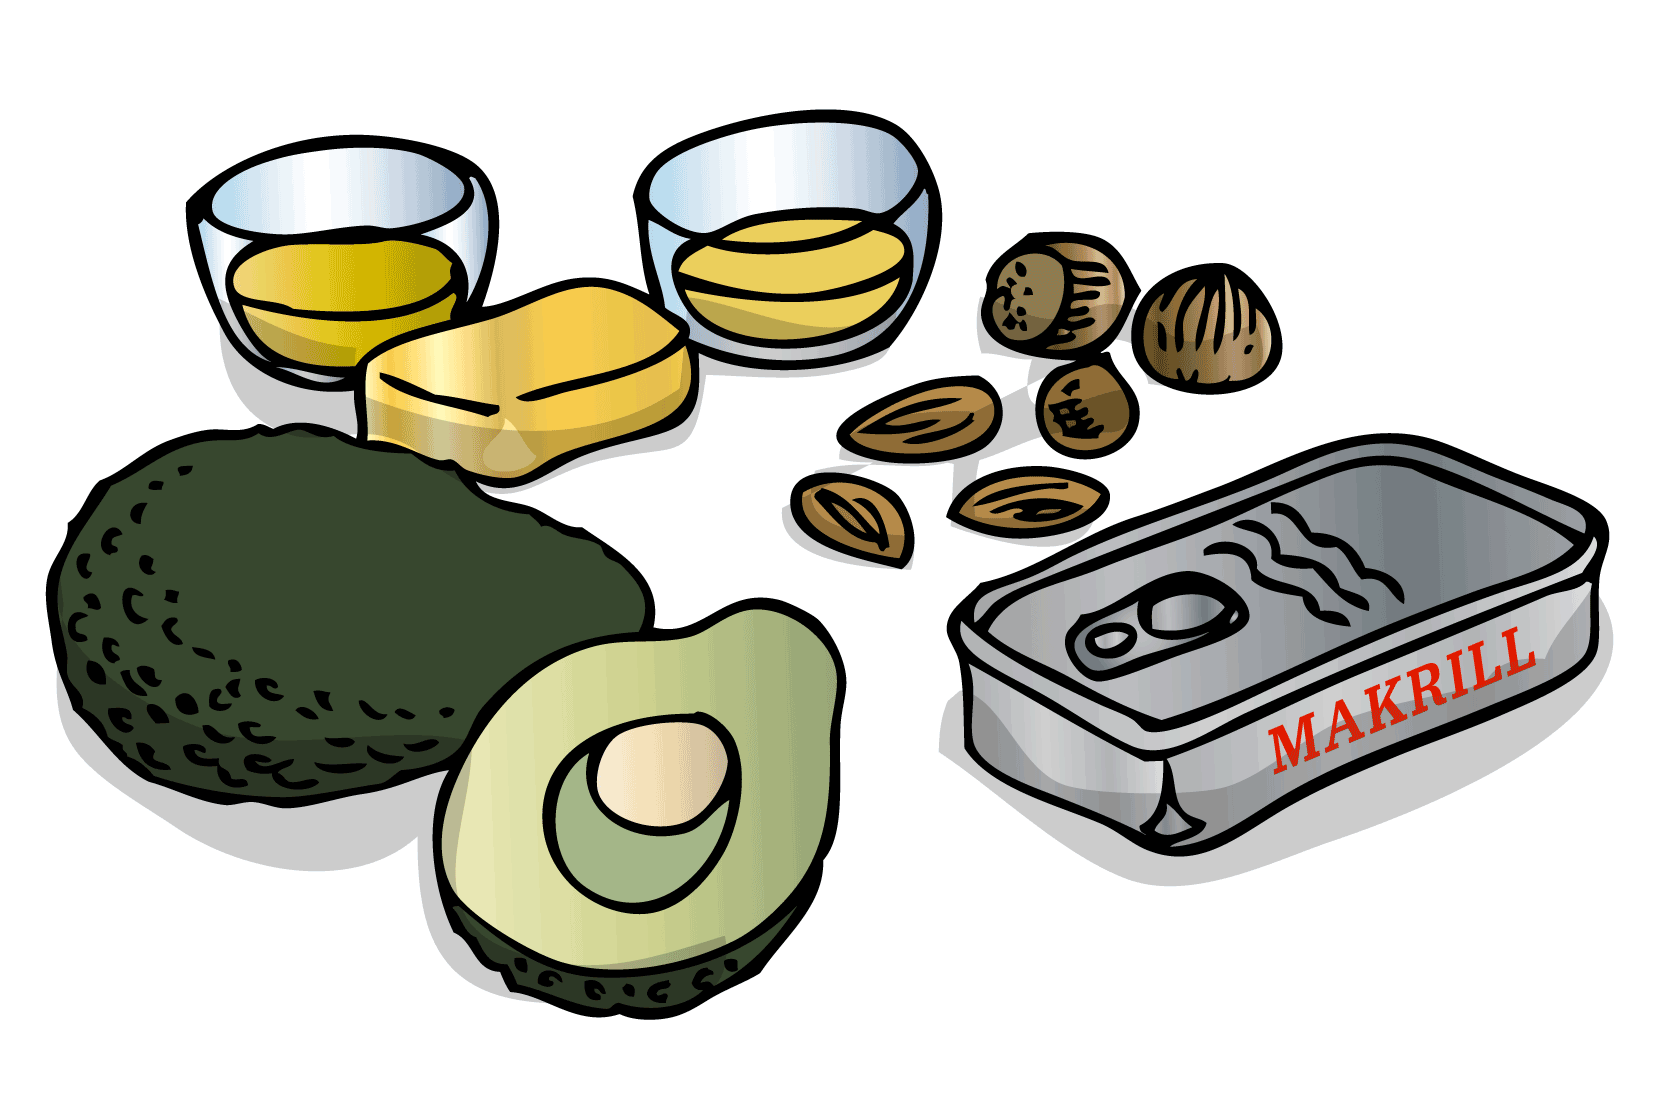 Avokado, olja, nötter, makrill. Illustration.